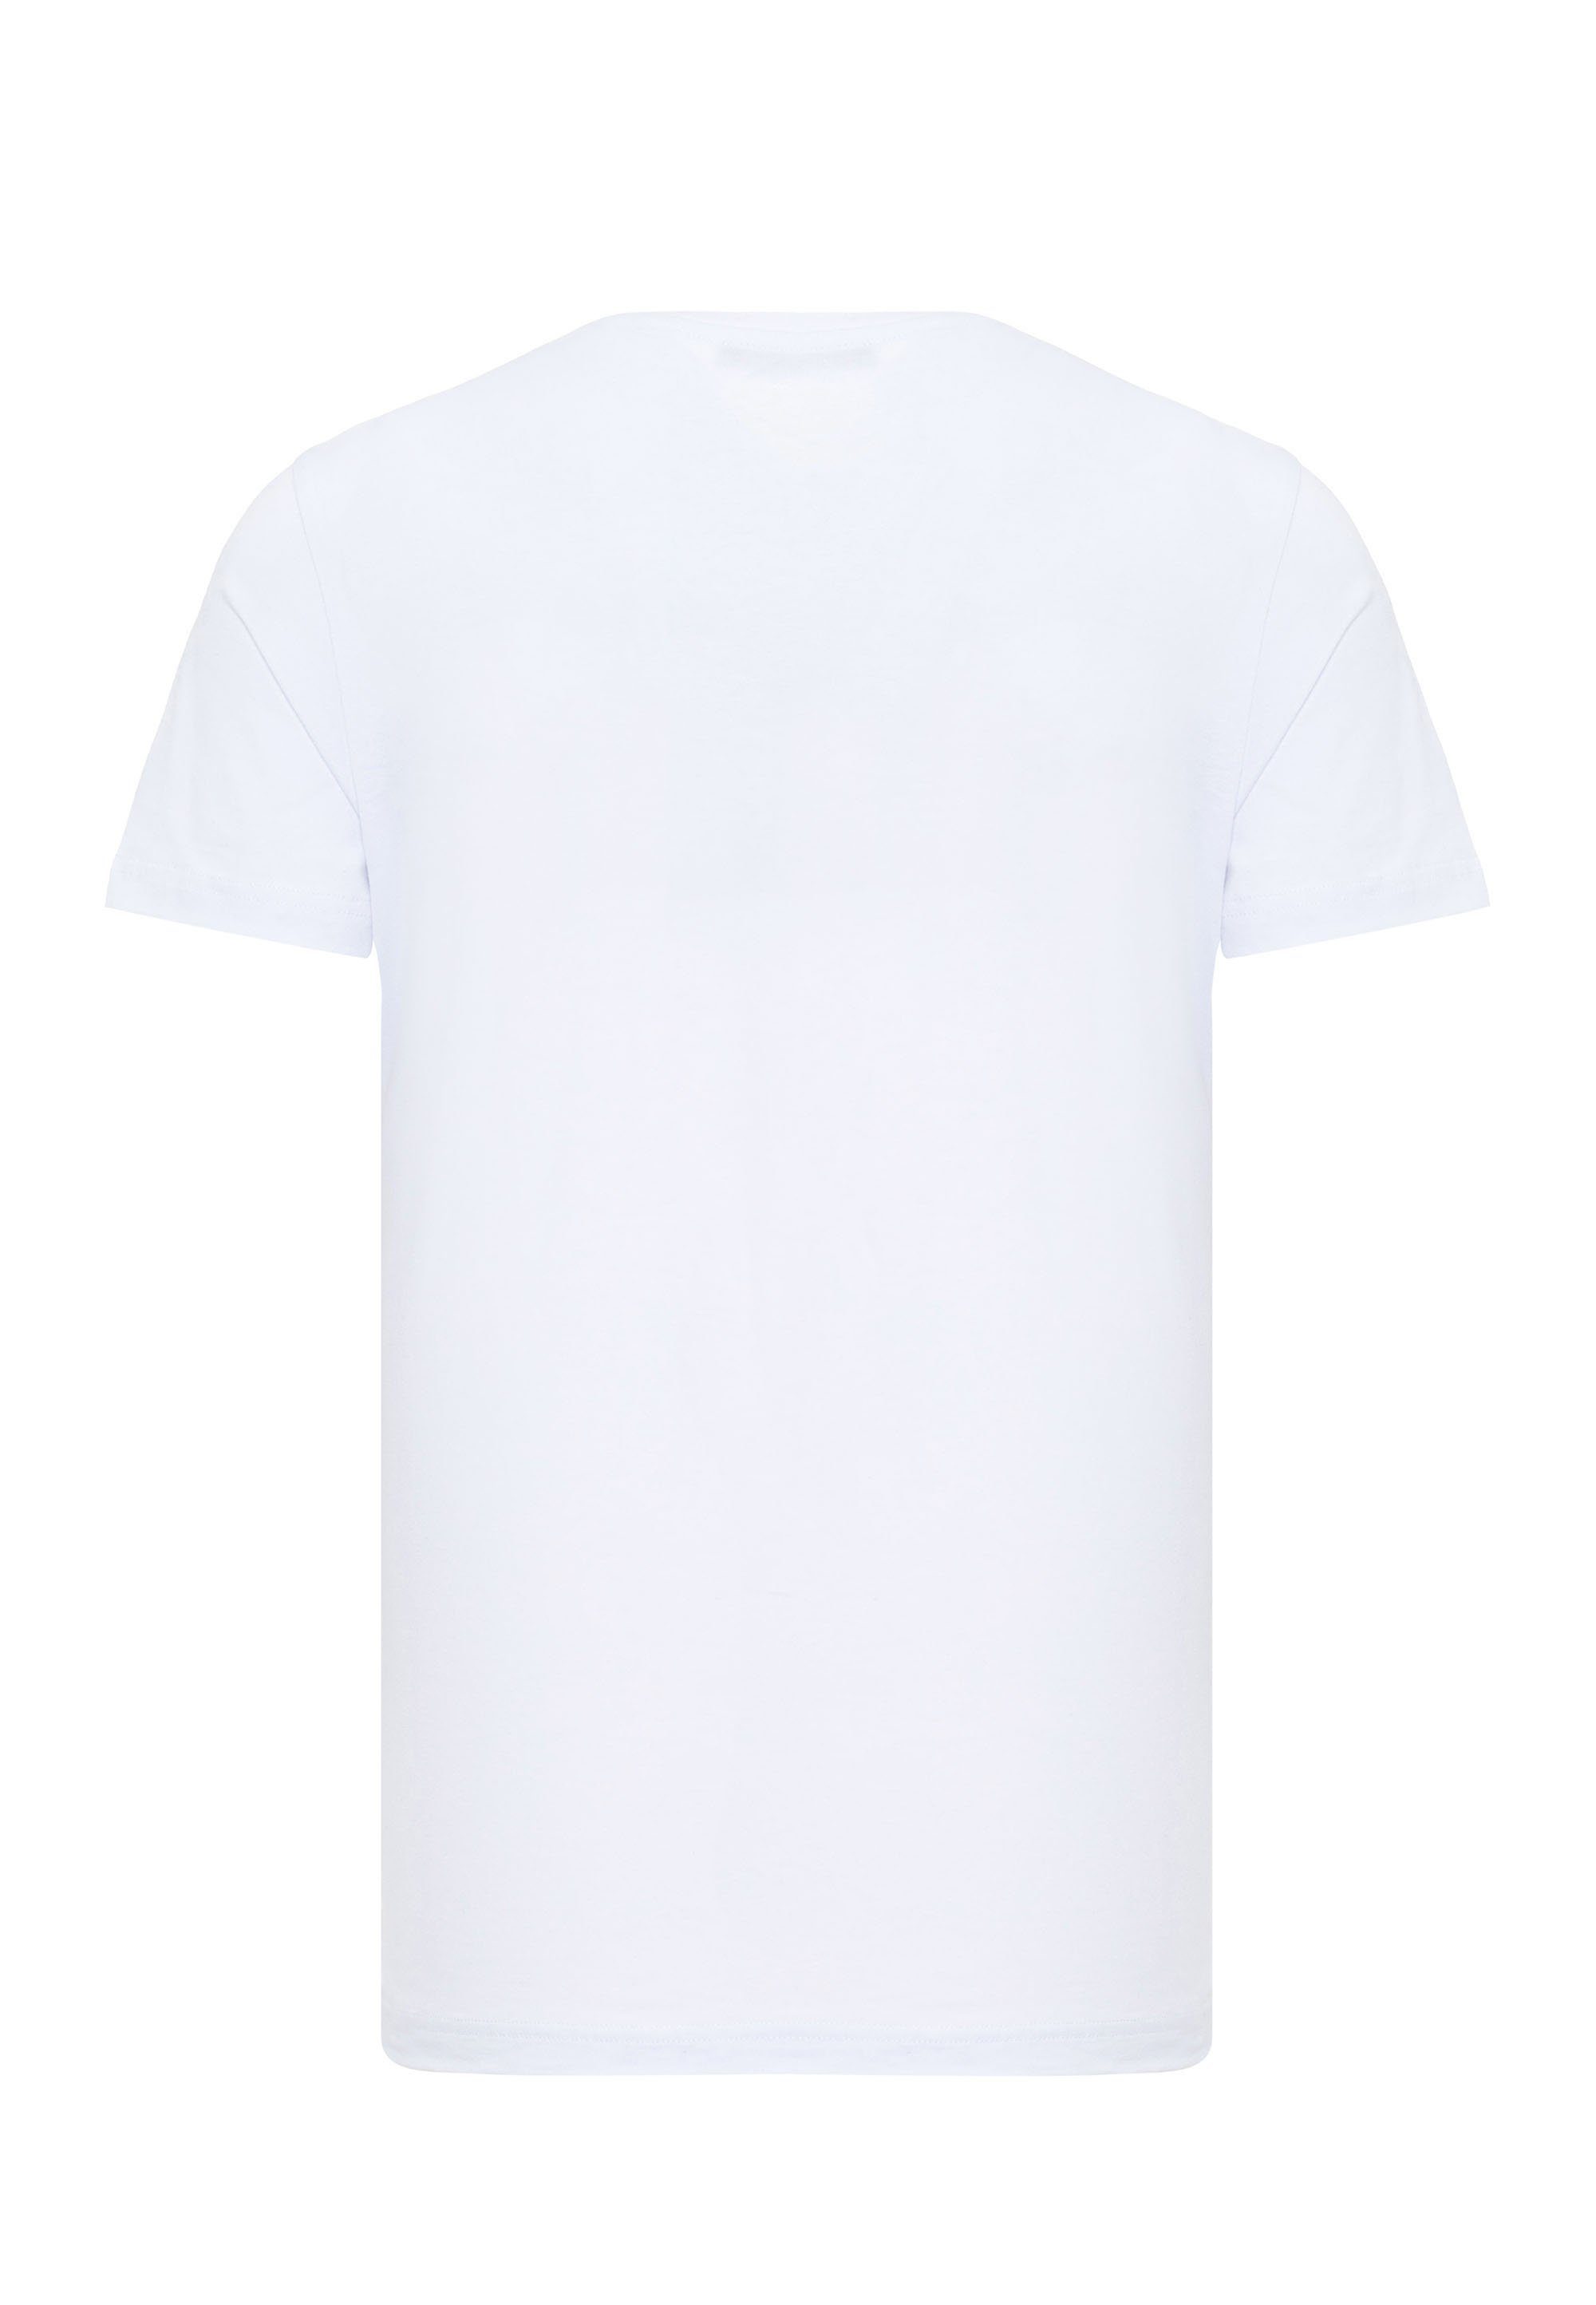 Cipo & Frontprint mit weiß T-Shirt coolem Baxx